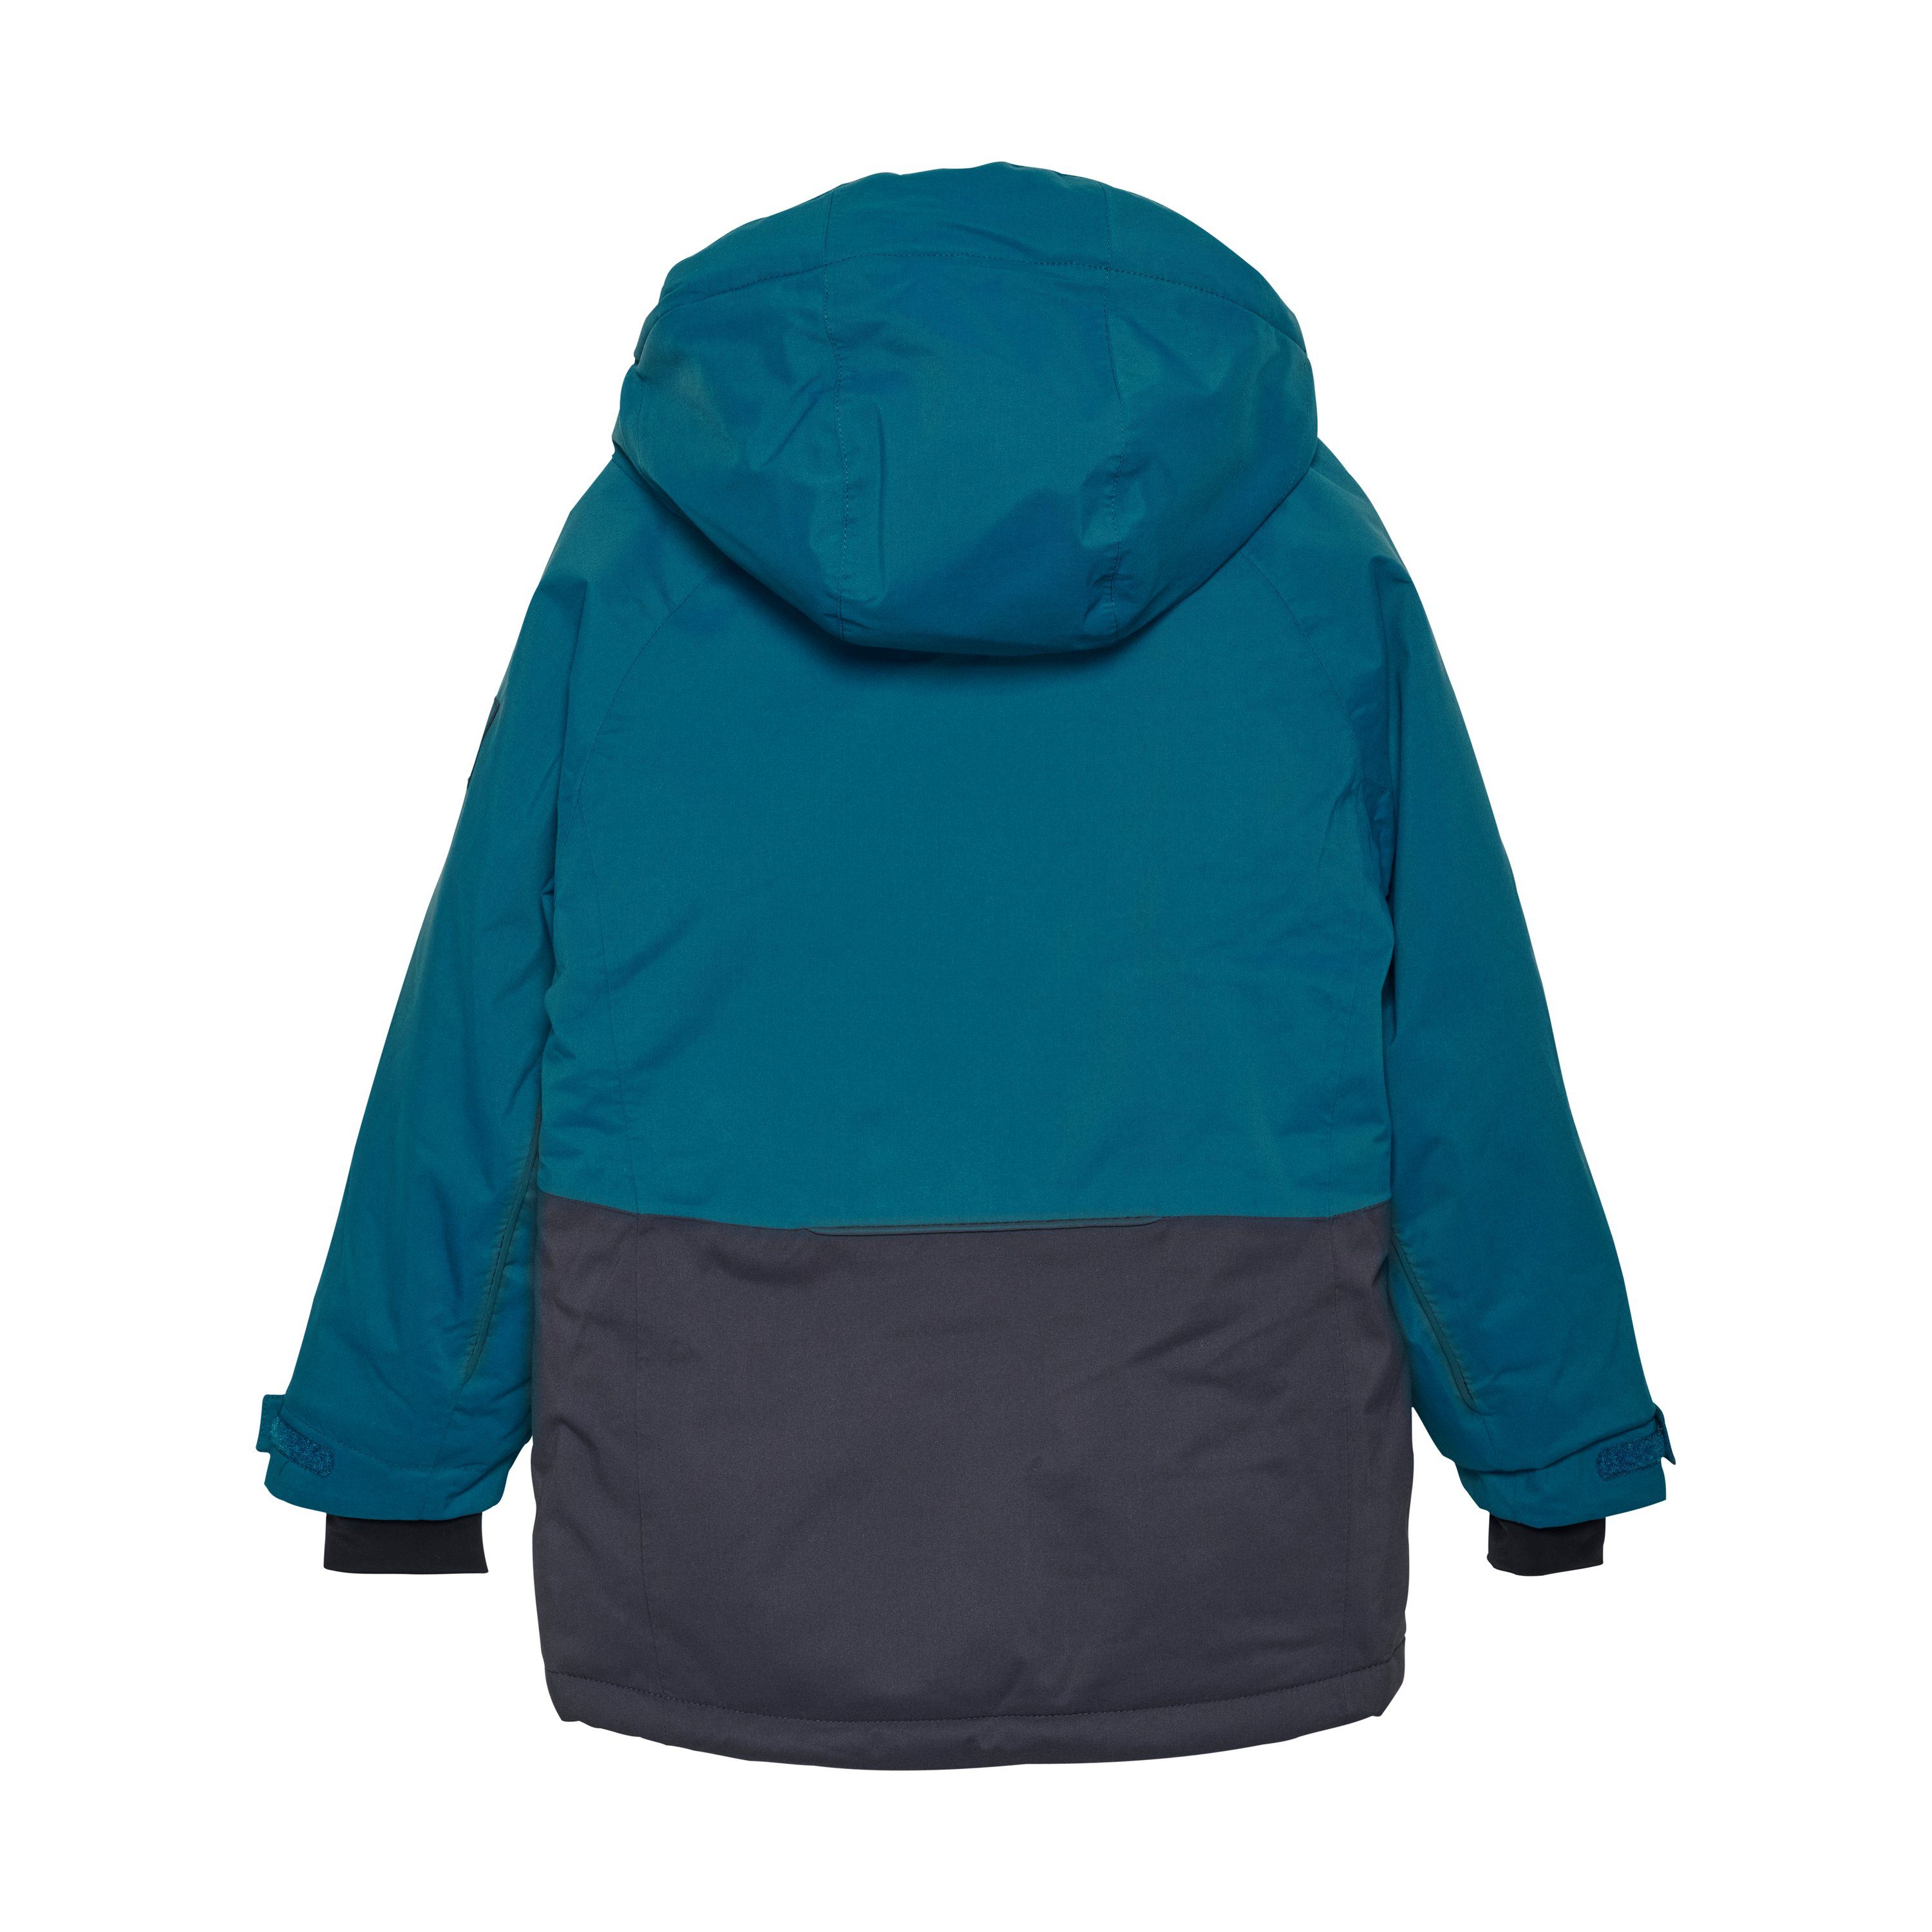 COLOR KIDS Skijacke COJr. Ski Jacket Colorblock - 741101, Skandivanischer  Style, vielseitig kombinierbar und mit viel Liebe zum Detail